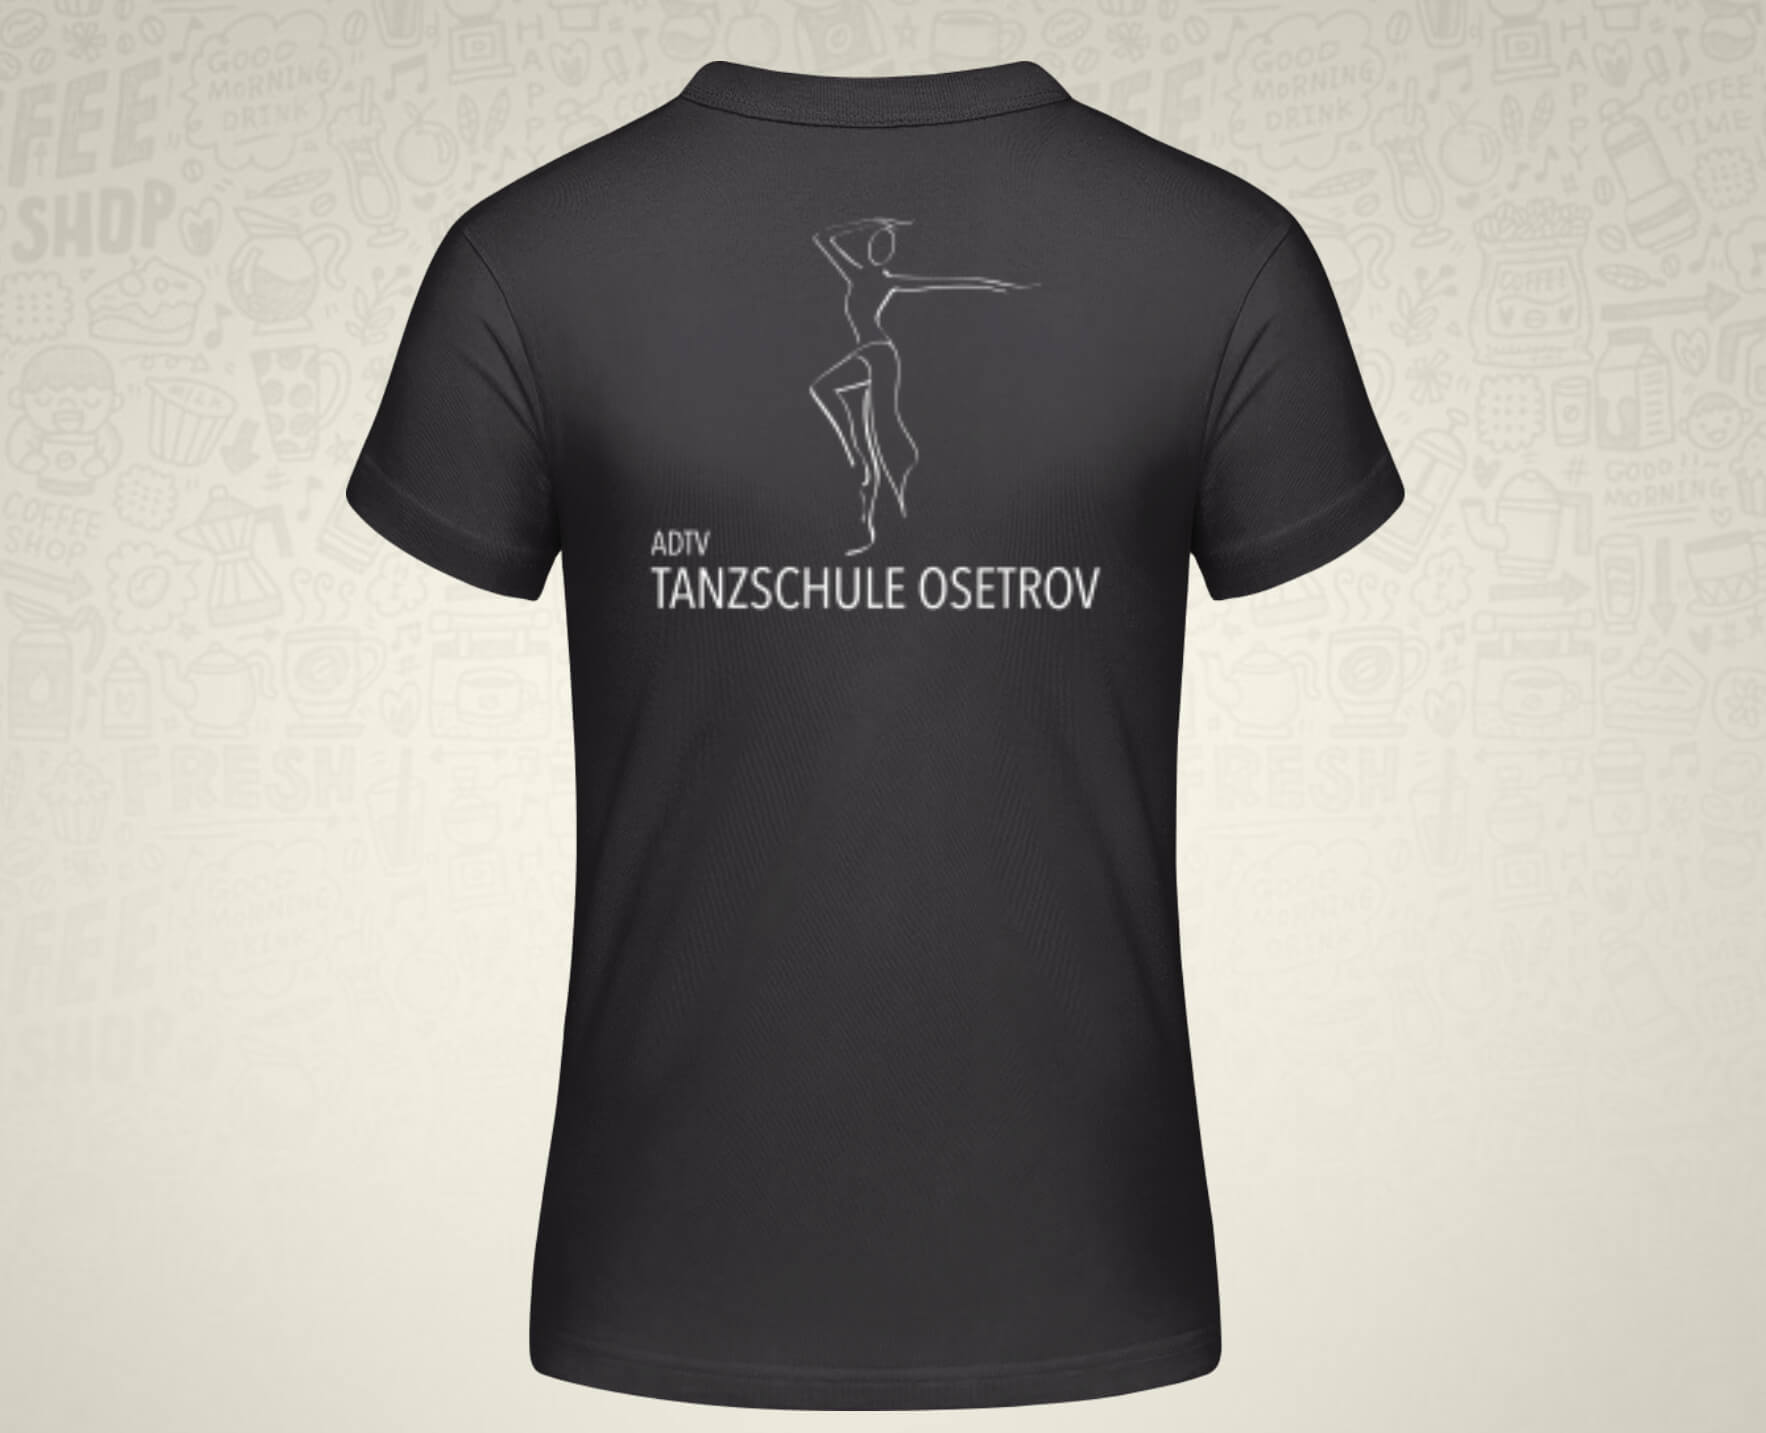 #TanzenMachtGlücklich T-Shirt für Frauen in schwarz